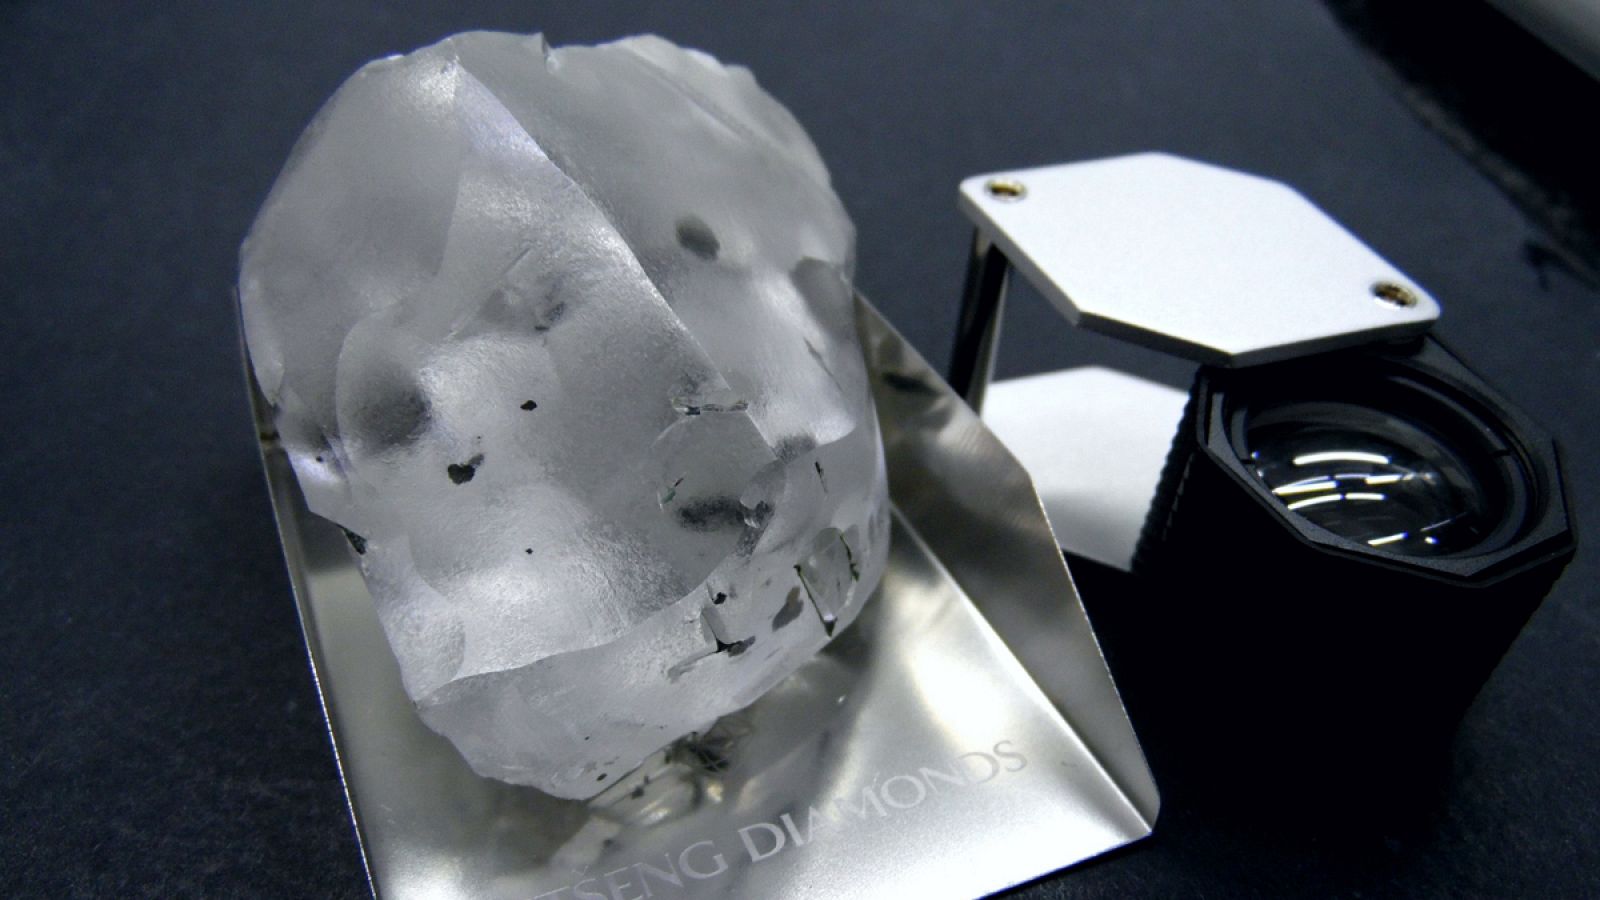 Vista del diamante encontrado por la empresa británica Gem Diamonds en una mina cercana a Maseru (Lesoto).